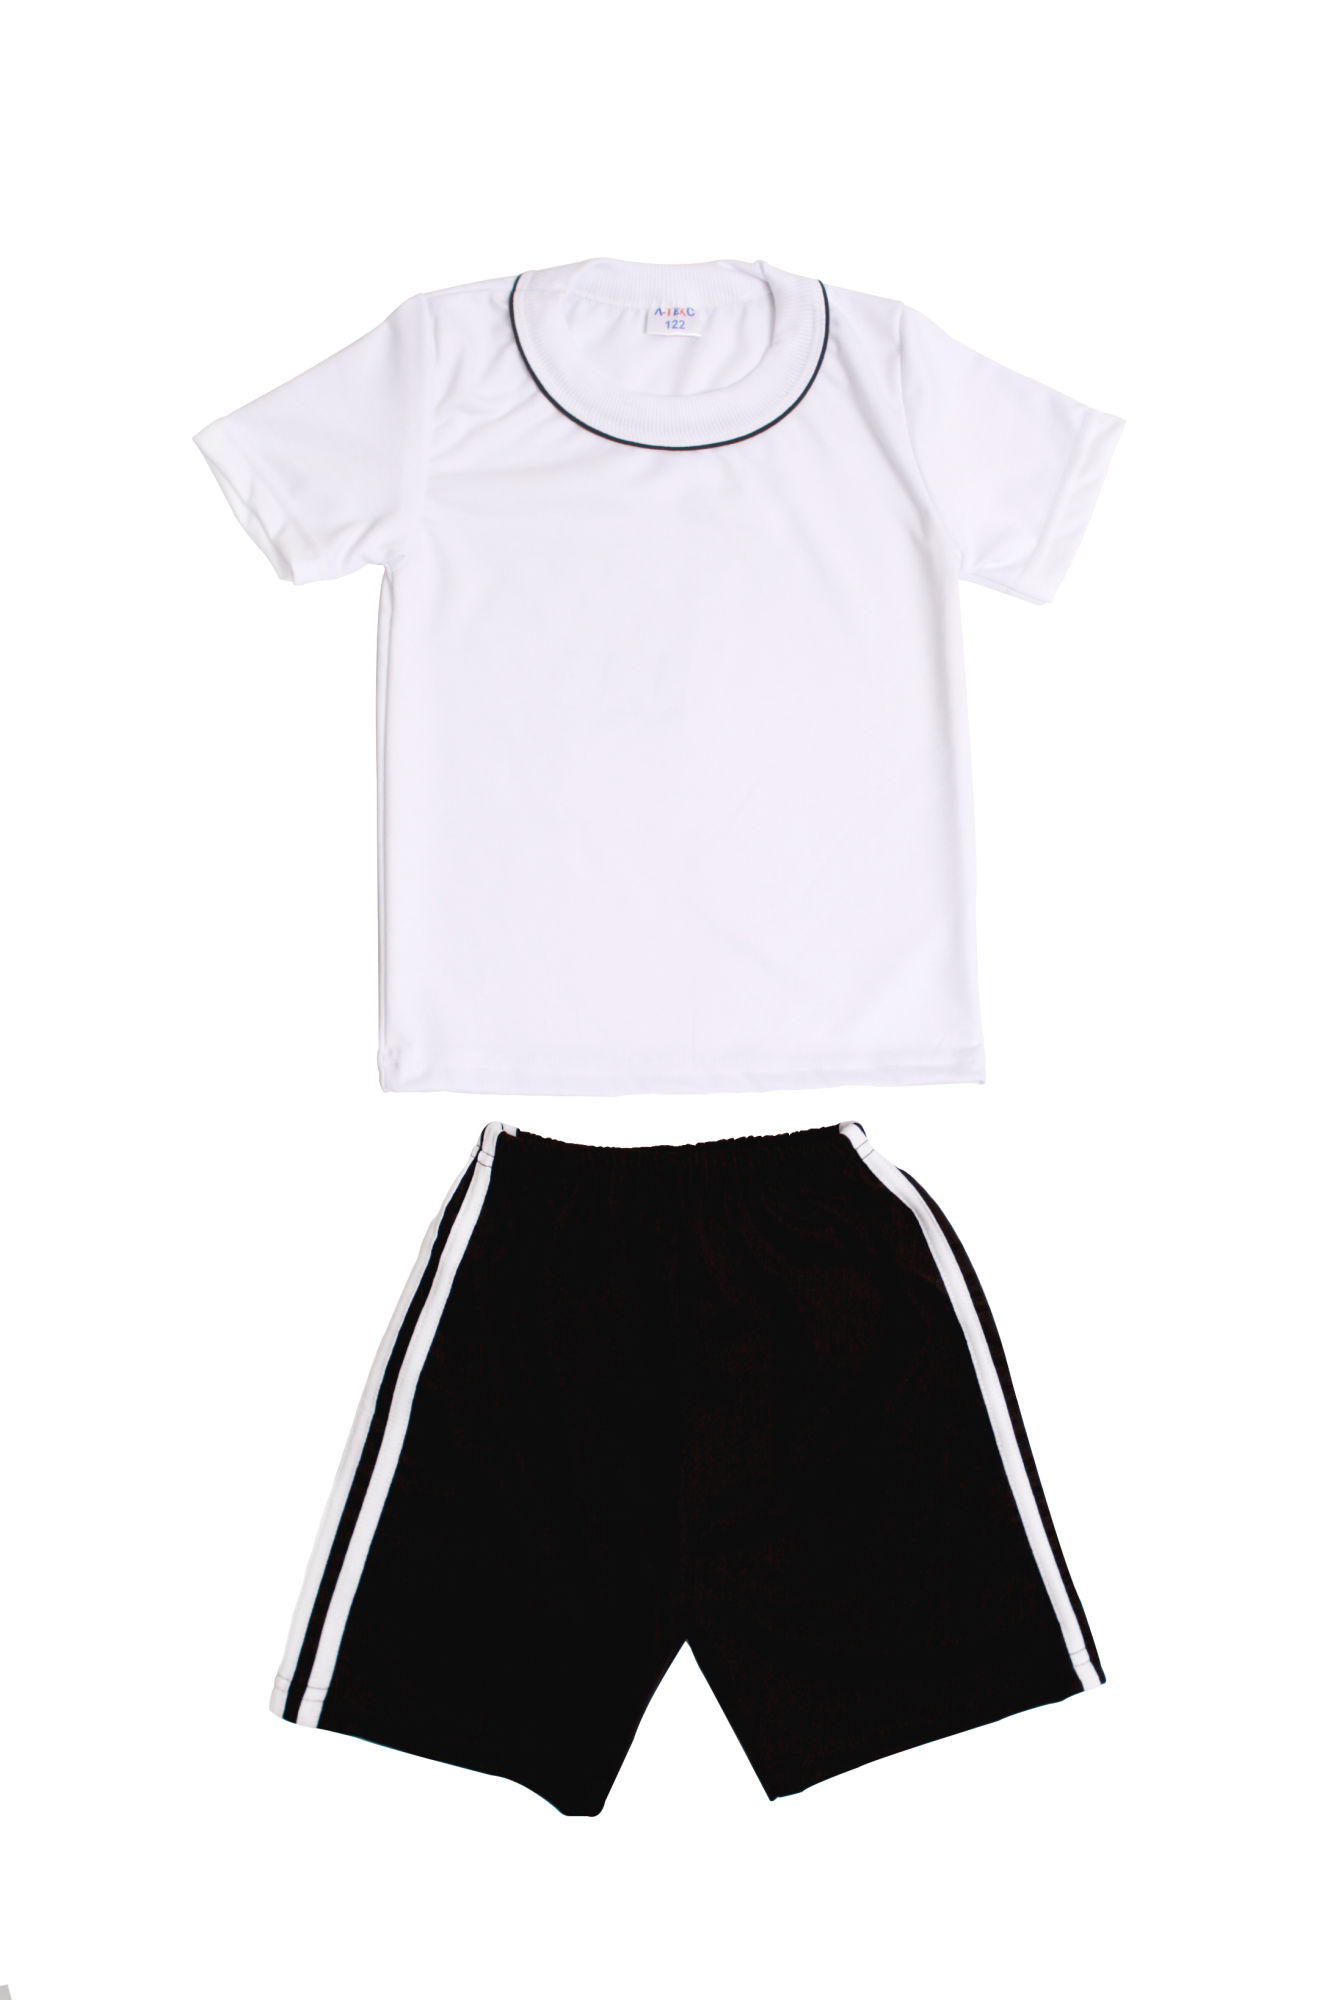 Белая футболка черные шорты. Дети в физкультурной форме. Спортивная форма шорты и футболка. Спортивная форма белая футболка и черные шорты. Мальчик в физкультурной форме.